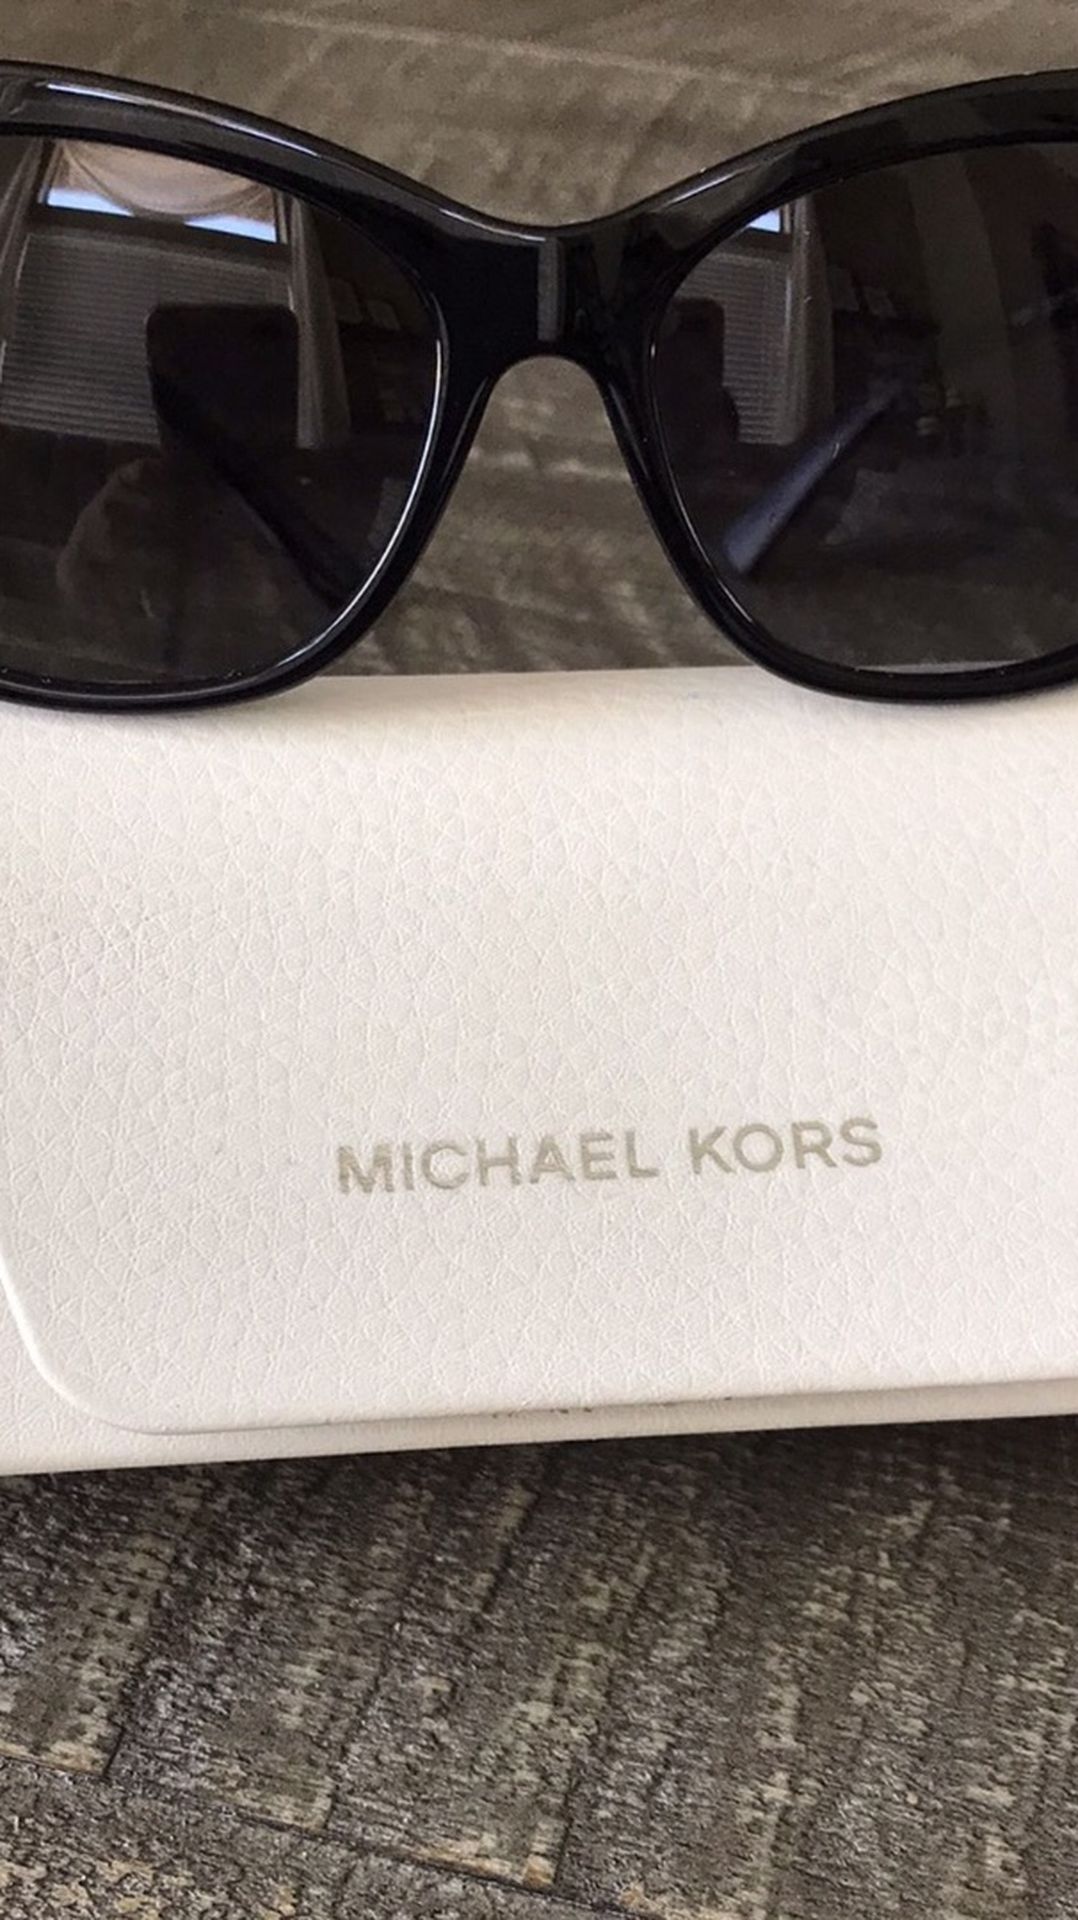 Michael Kors Cat sunglasses Excellent Condition $50